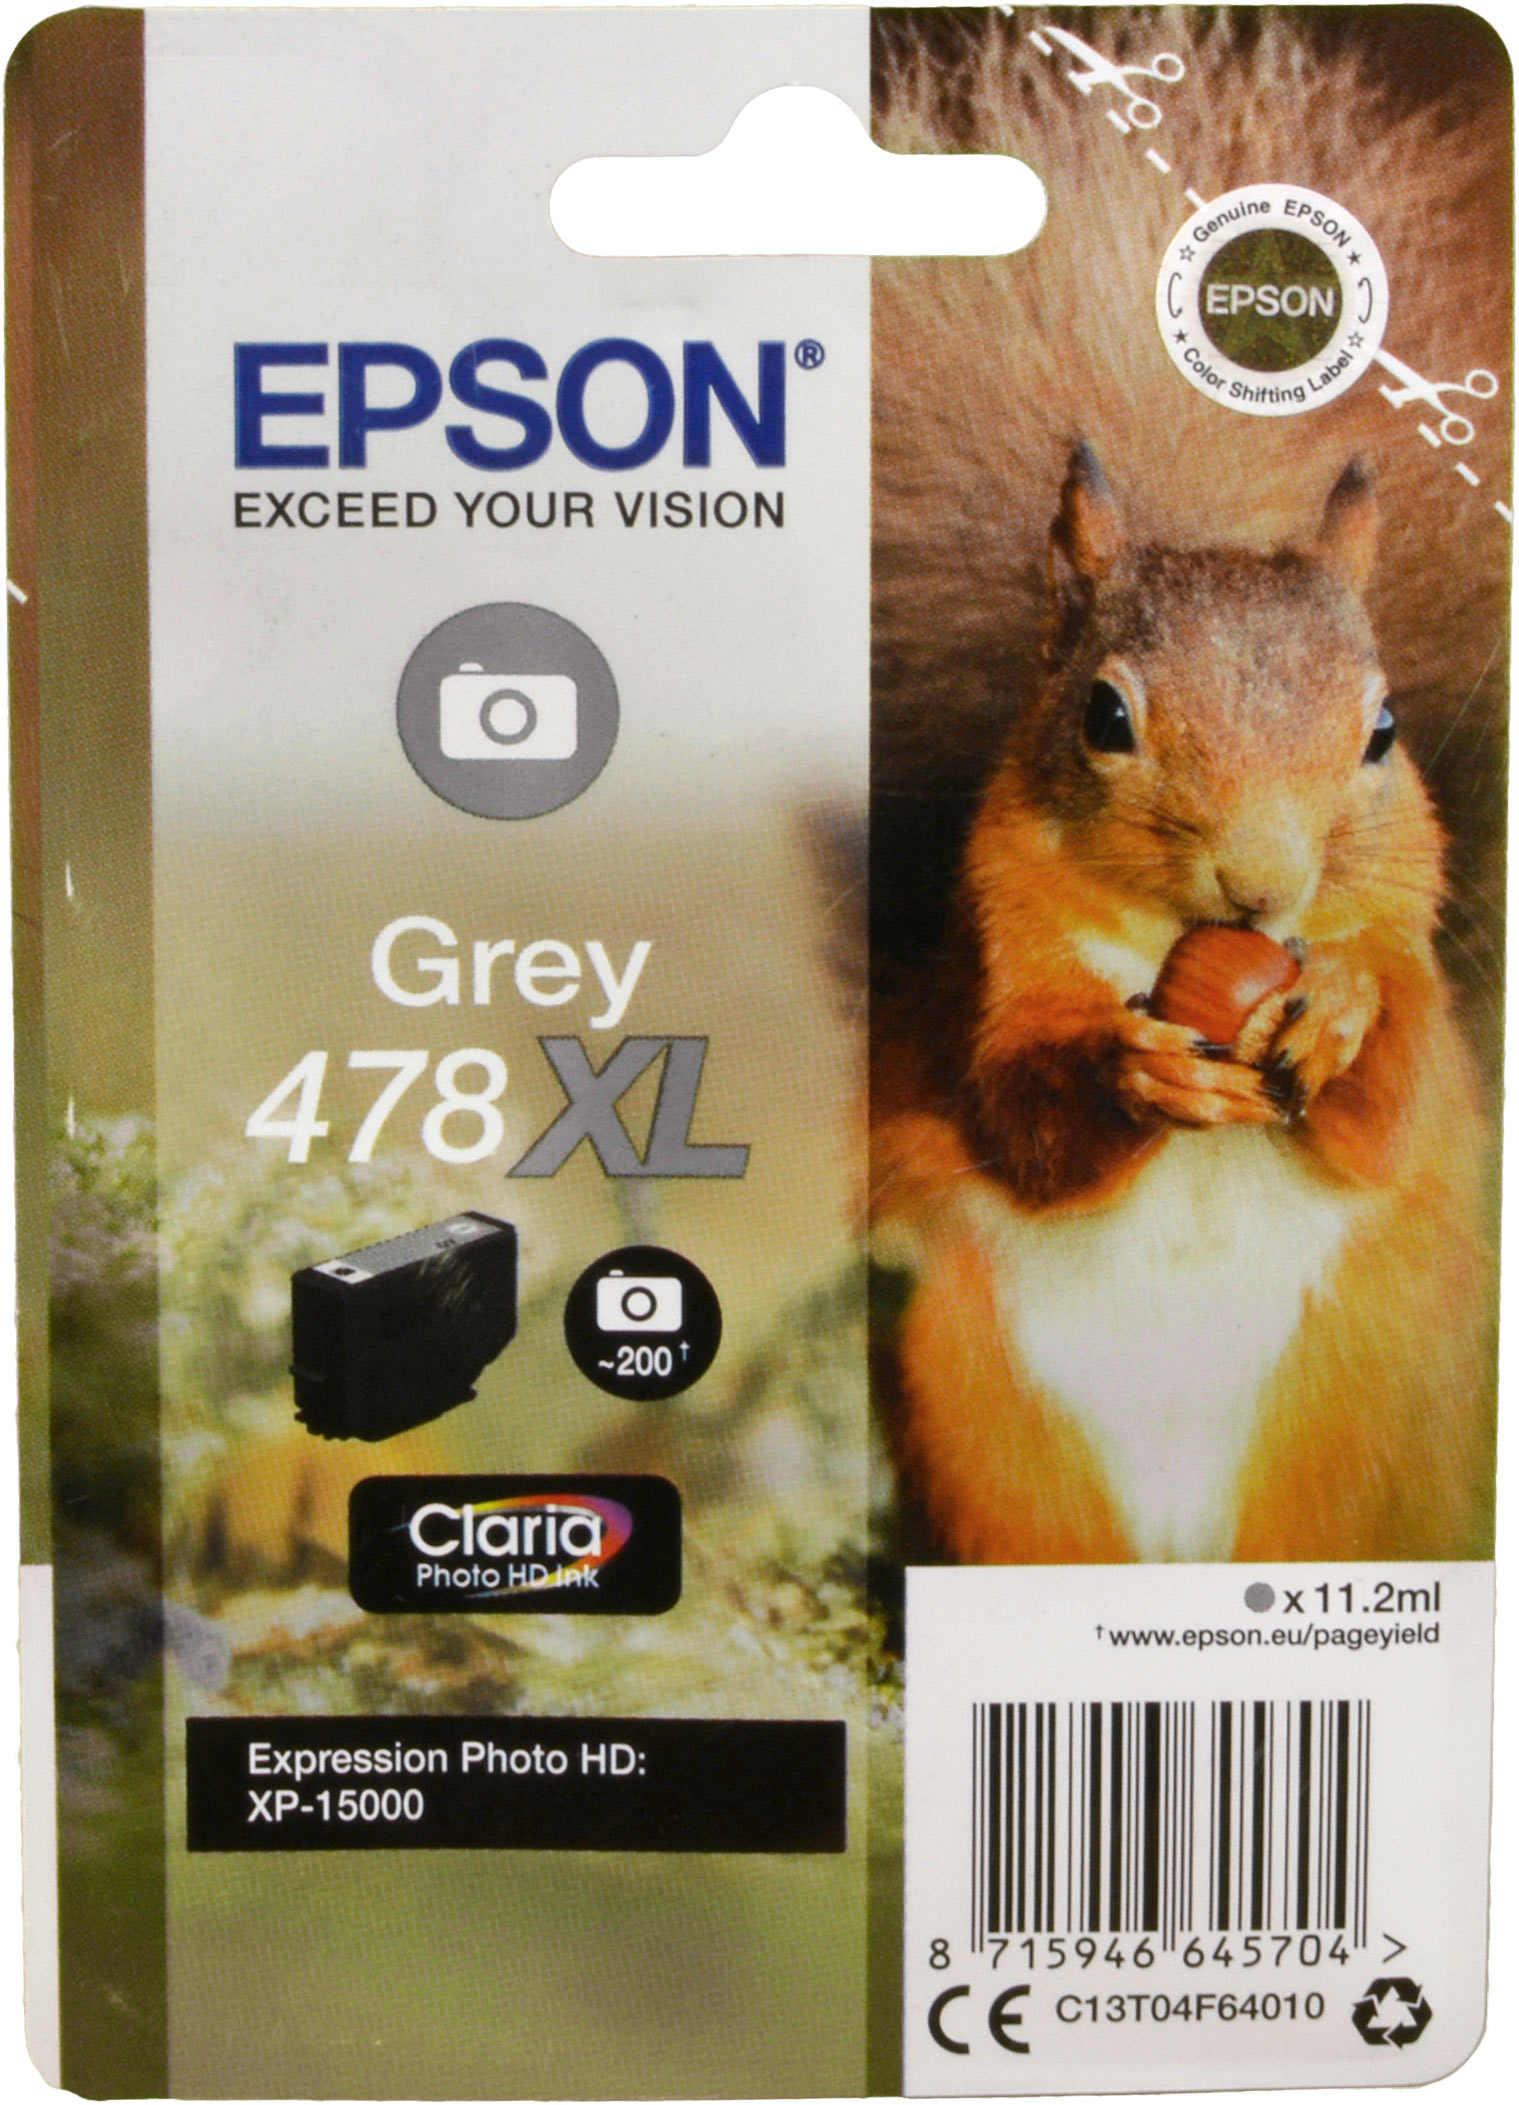 Epson Tinte C13T04F64010 Grey 478XL  grau